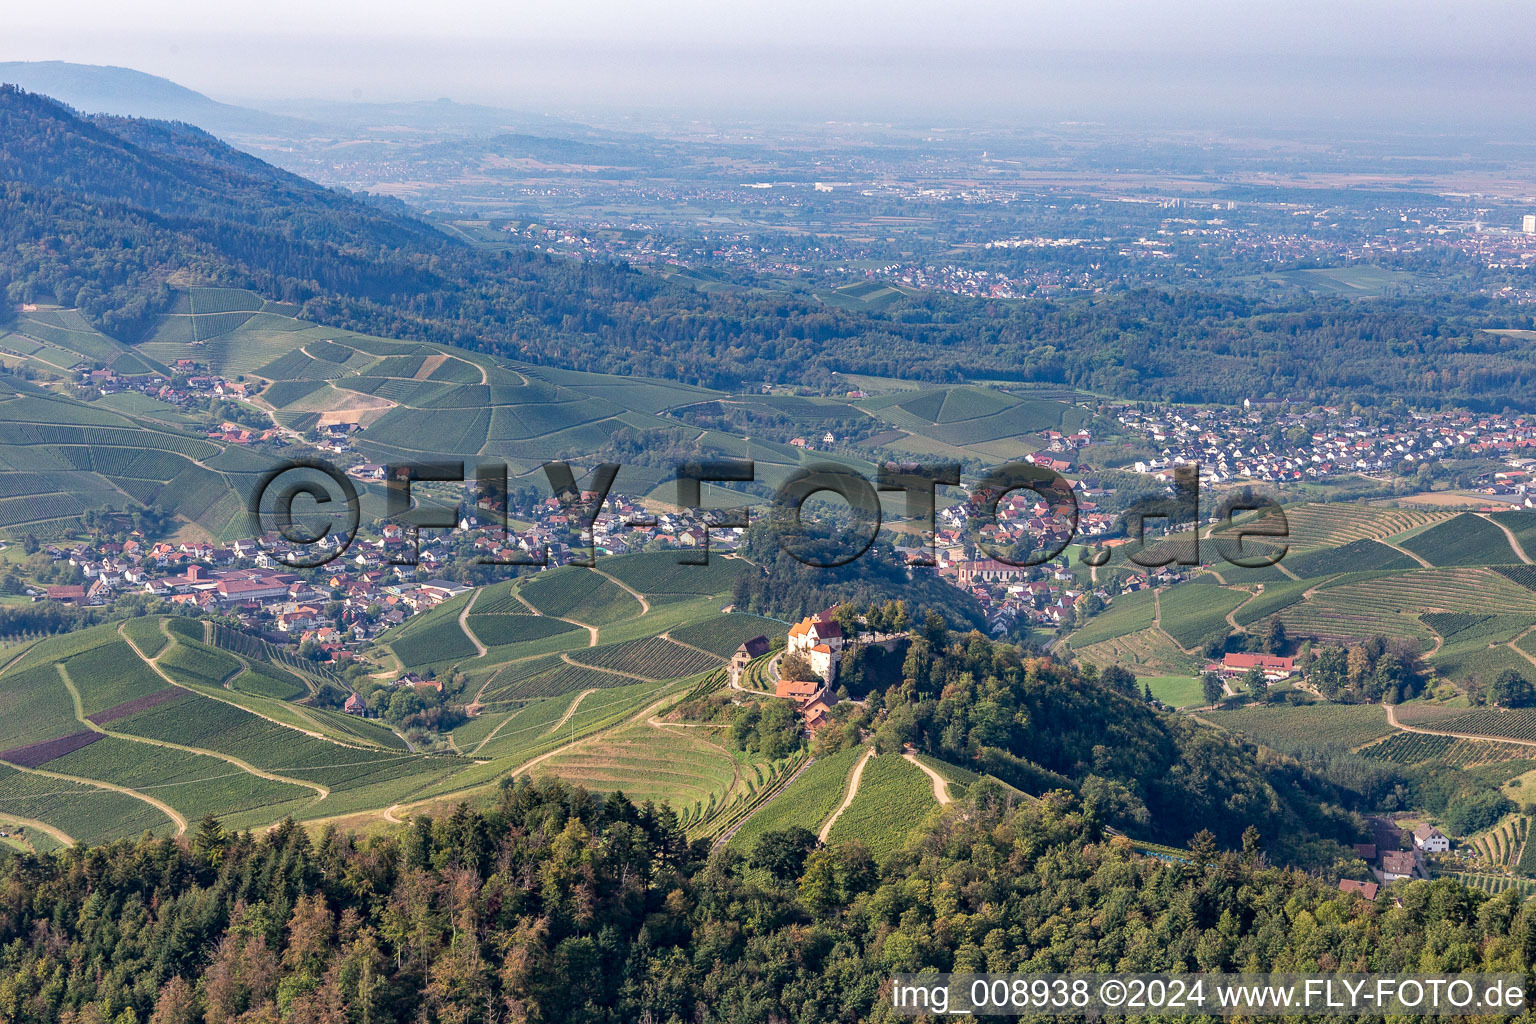 Vue aérienne de Domaine viticole et restaurants du château de Staufenberg à Durbach dans le département Bade-Wurtemberg, Allemagne